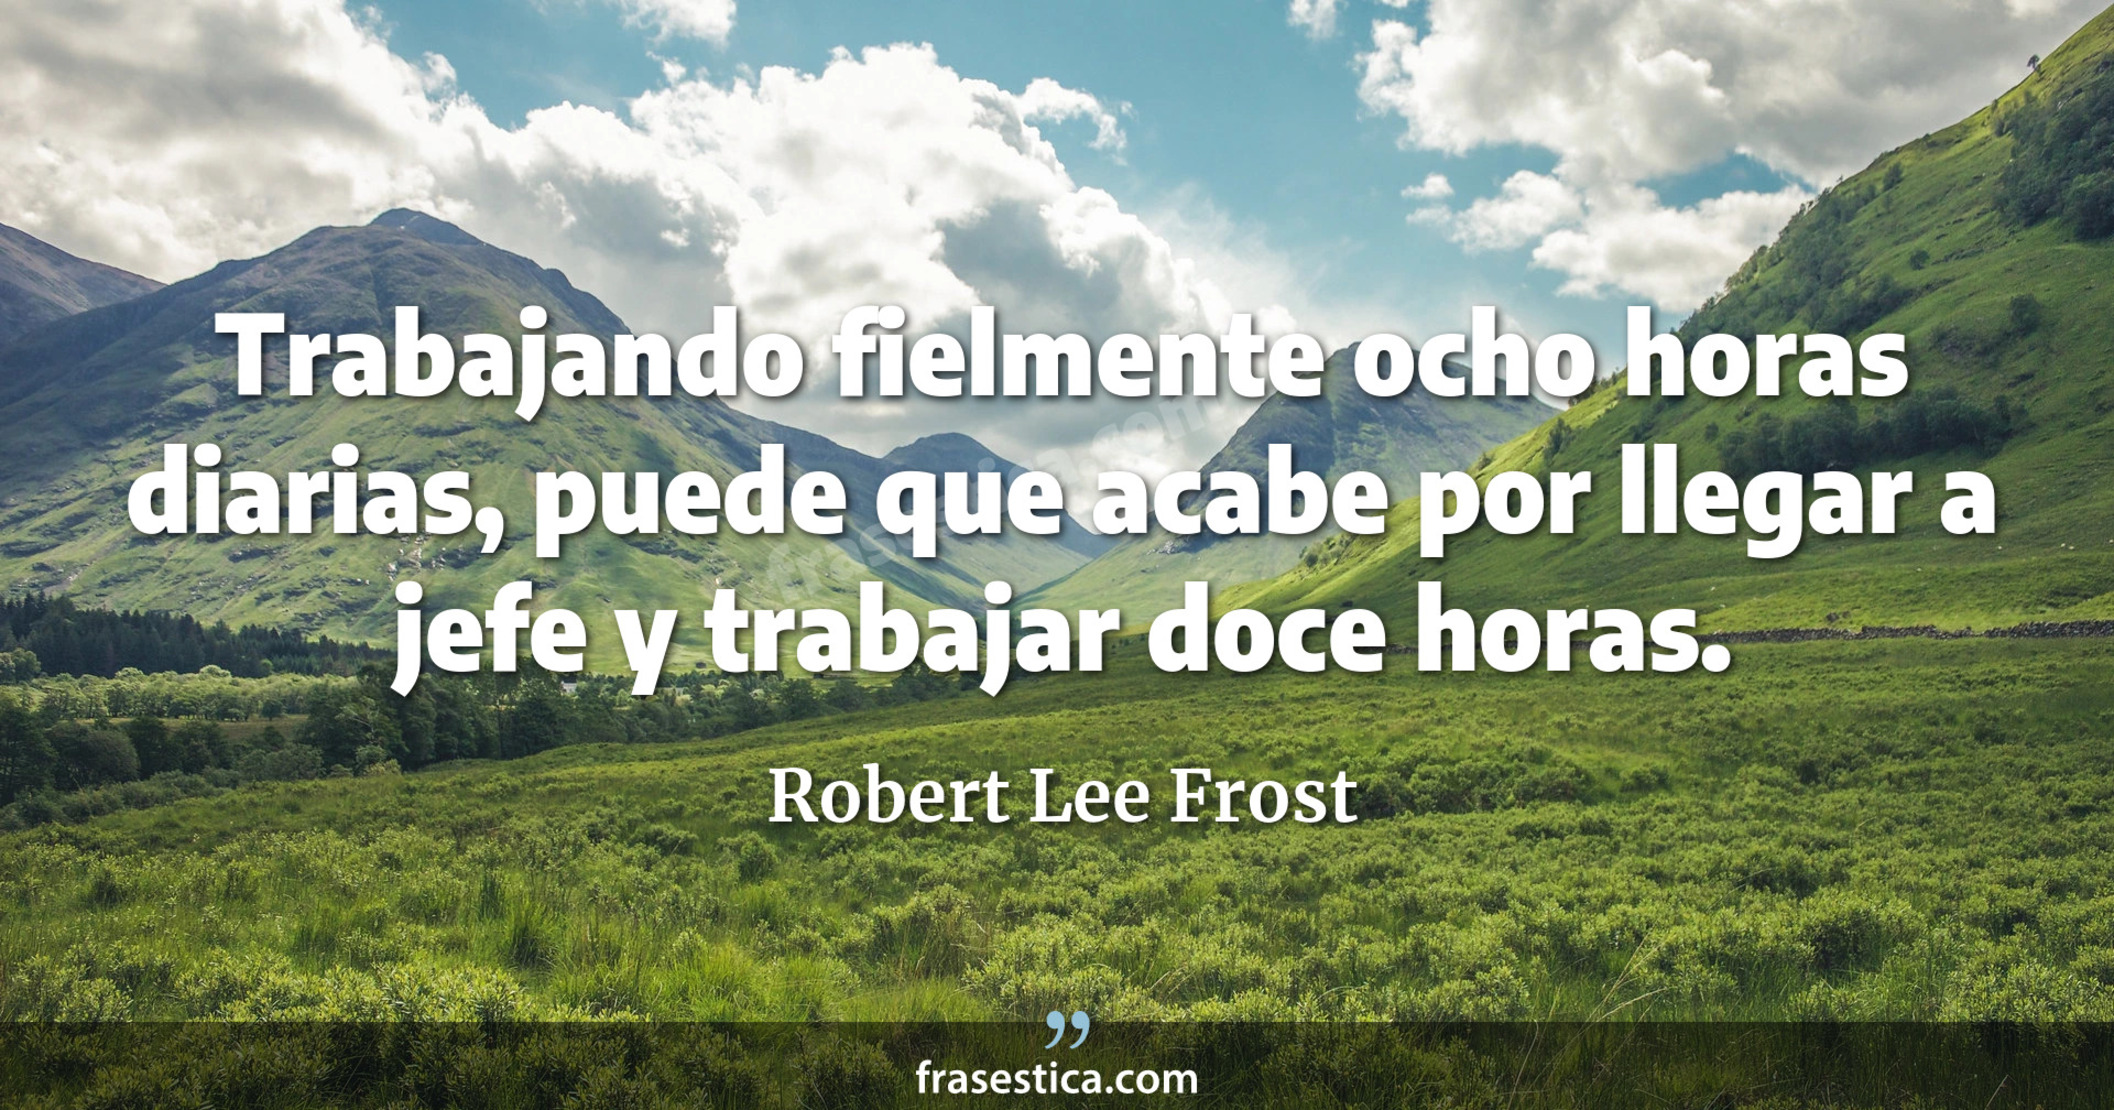 Trabajando fielmente ocho horas diarias, puede que acabe por llegar a jefe y trabajar doce horas. - Robert Lee Frost